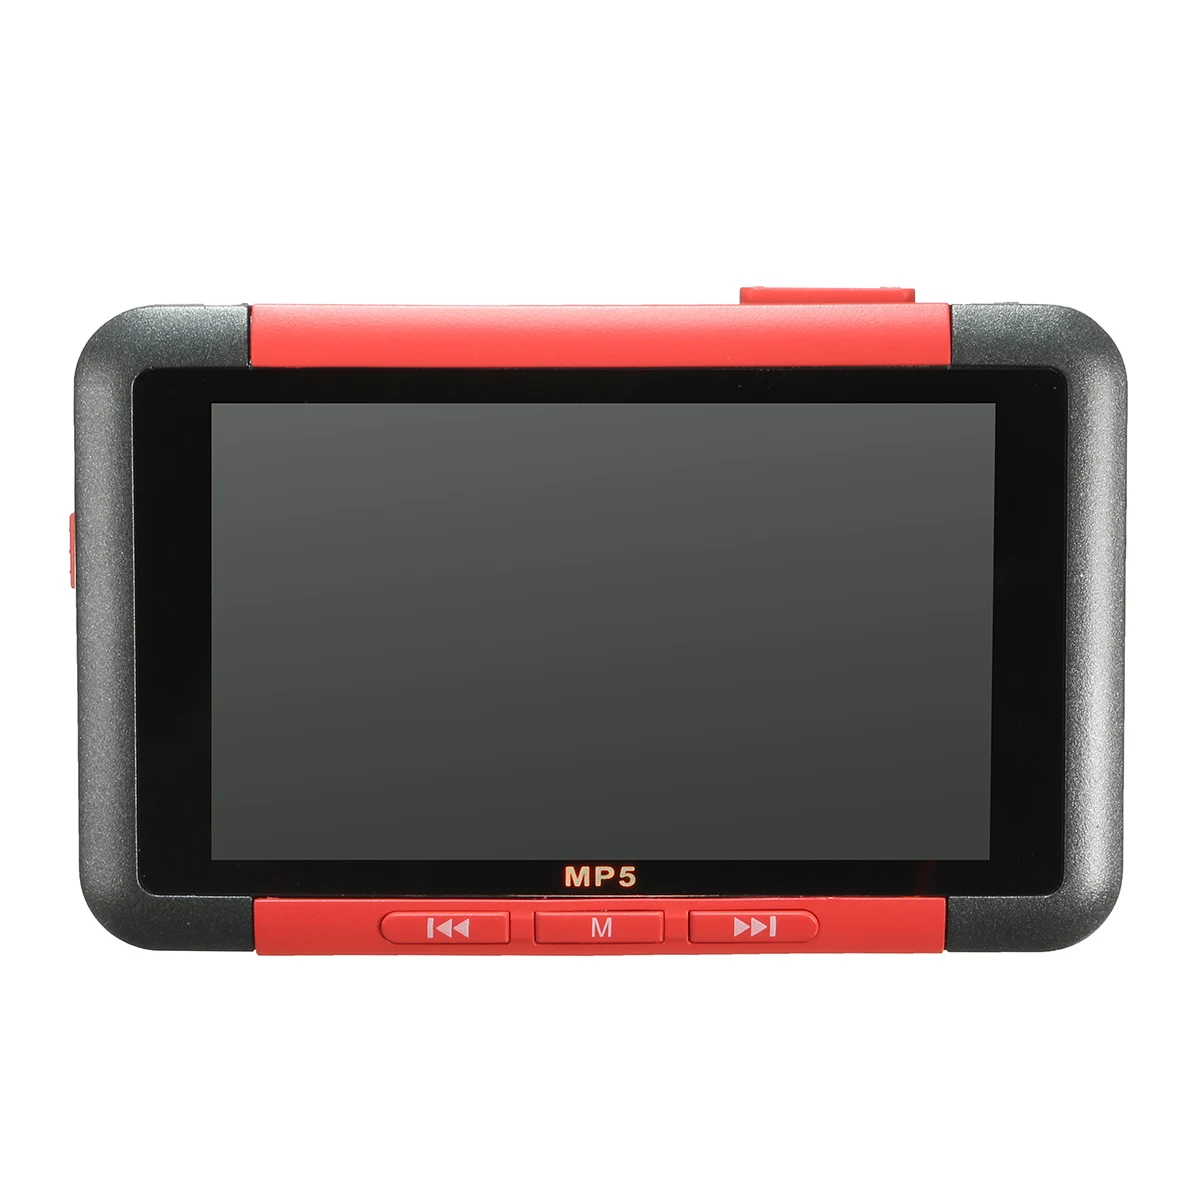 8 Гб 3 дюймов MP5 плеер тонкий ЖК-дисплей Экран MP5 видео МУЗЫКА медиаплеер высокое качество Поддерживаемые карты памяти FM радио Регистраторы игры - Цвет: Красный